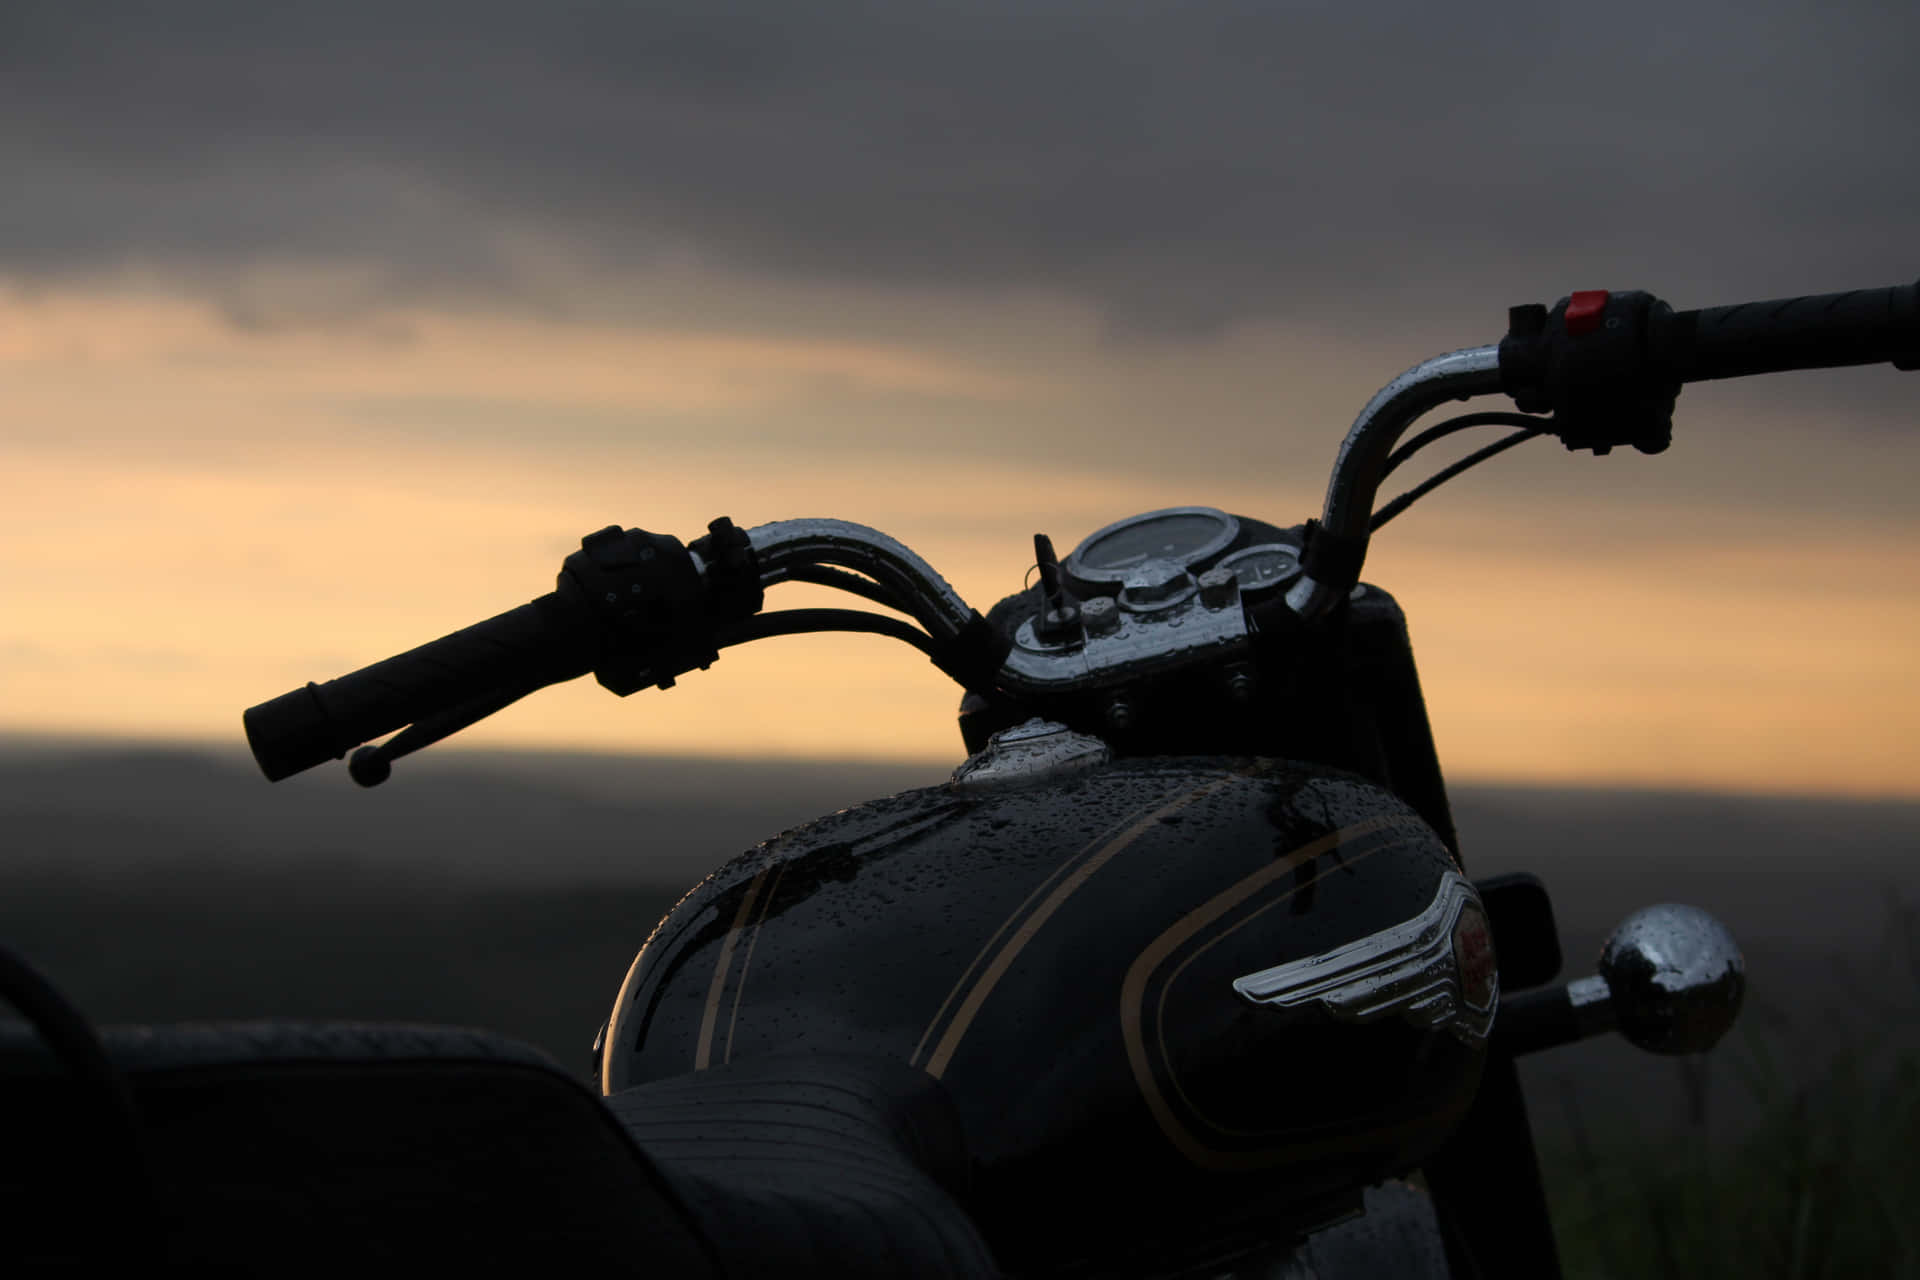 Standard Royal Enfield Motorcycle Desktop